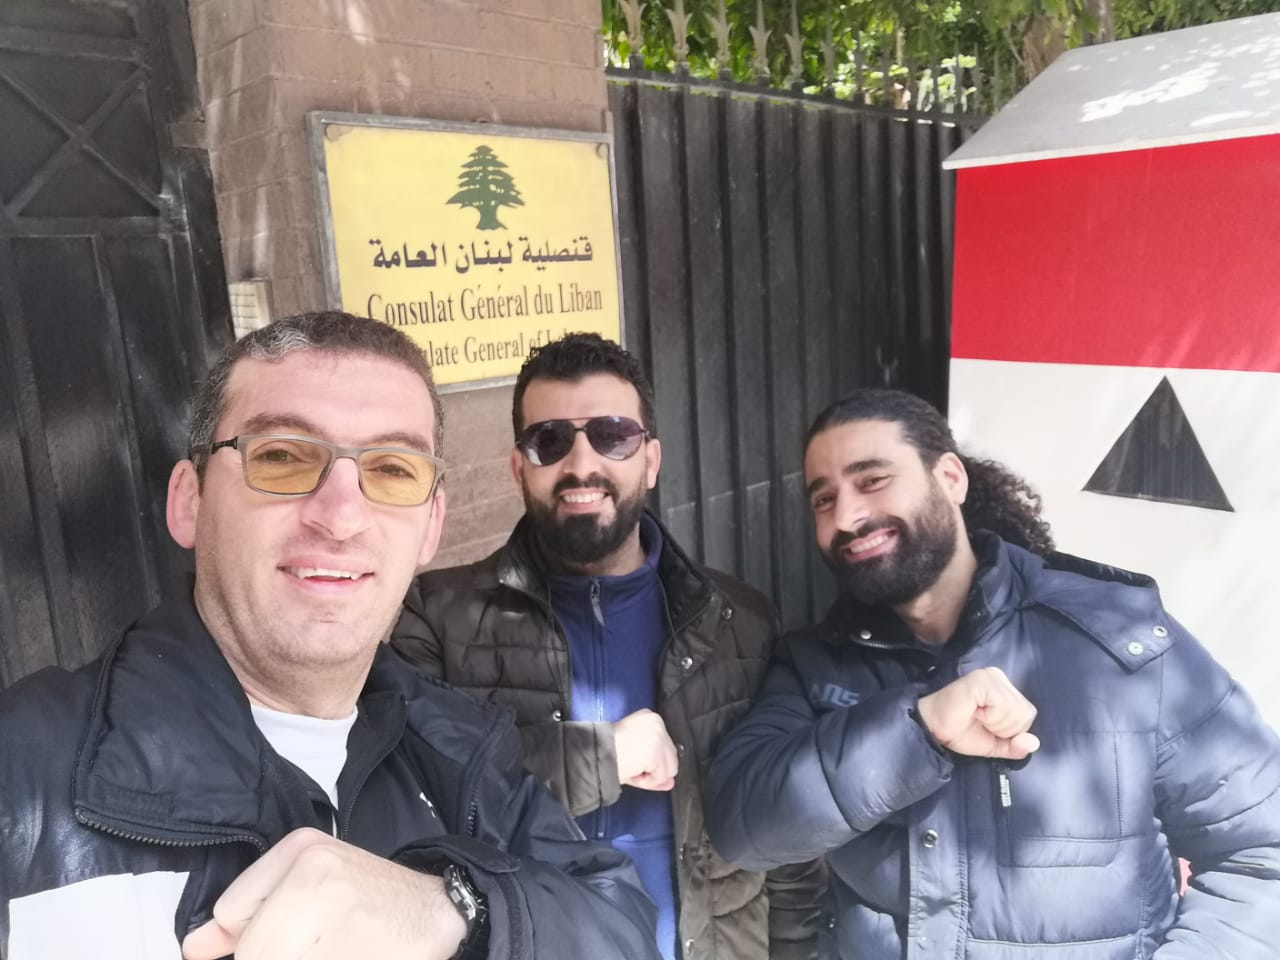 رسالة من طلاب دكتوراه لبنانيون في الإسكندرية: نحن محتجزون قسرياً لأكثر من 13 يوماً وإمكاناتنا أصبحت معدومة!